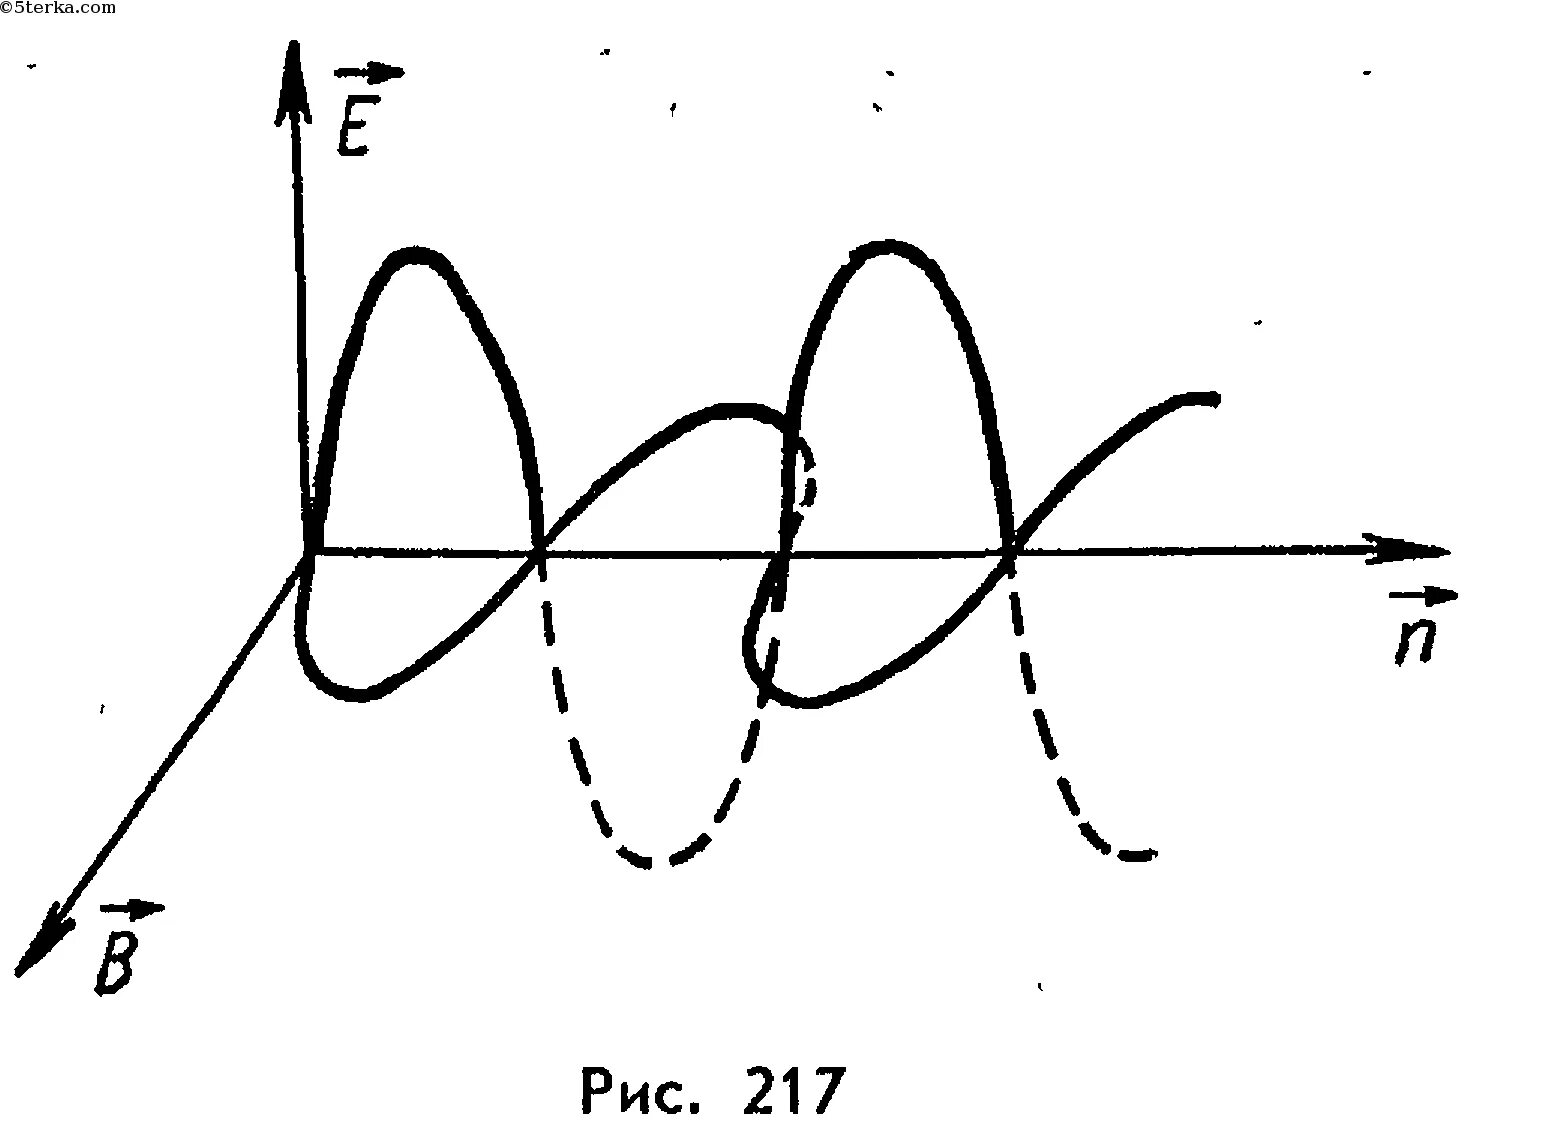 Изображение электромагнитной волны. Электромагнитная волна рисунок. Схематическое изображение электромагнитной волны. График электромагнитной волны. Электромагнитная волна распространяется в направлении